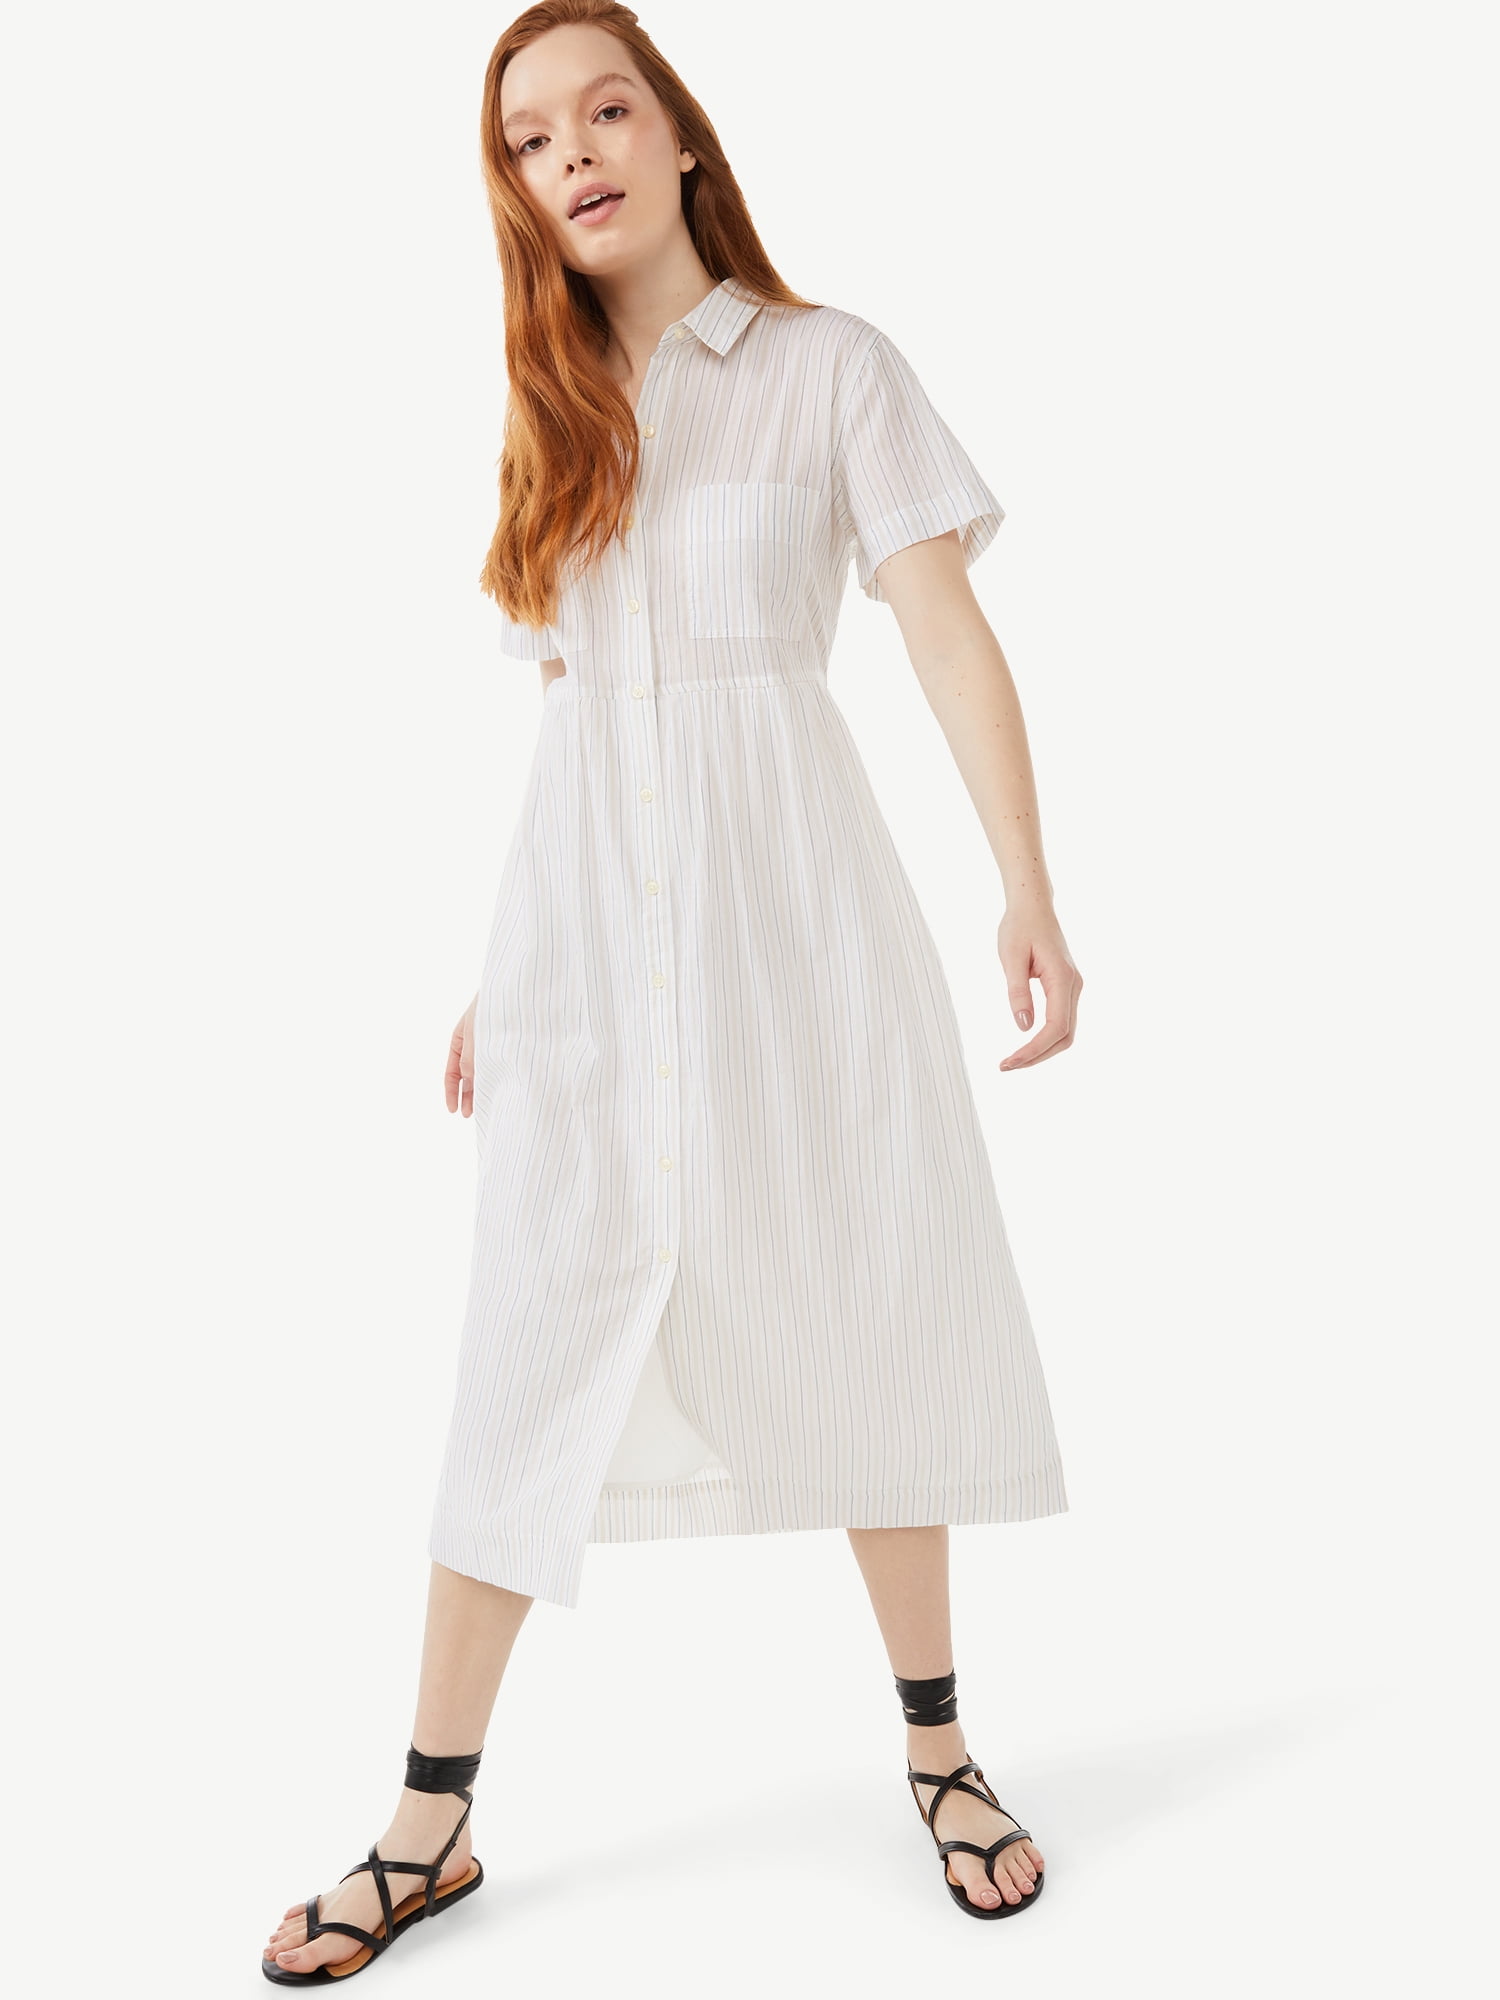 Free Assembly Women’s Short Sleeve Maxi Shirtdress - Walmart.com